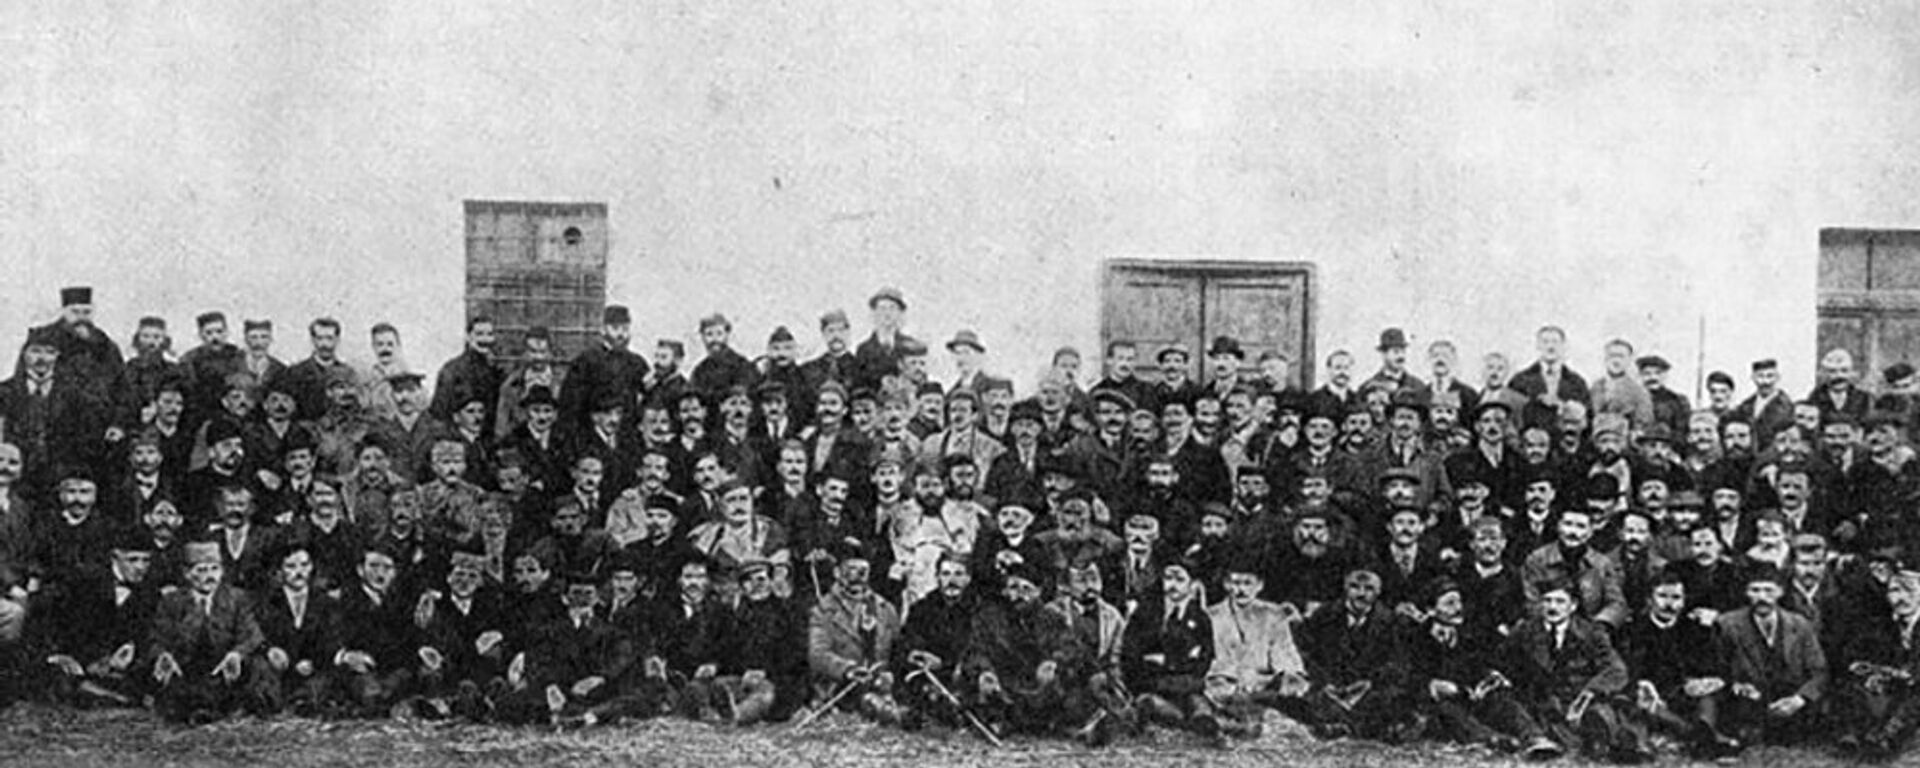 Podgorička skupština odžana 1918. godine - Sputnik Srbija, 1920, 29.11.2020